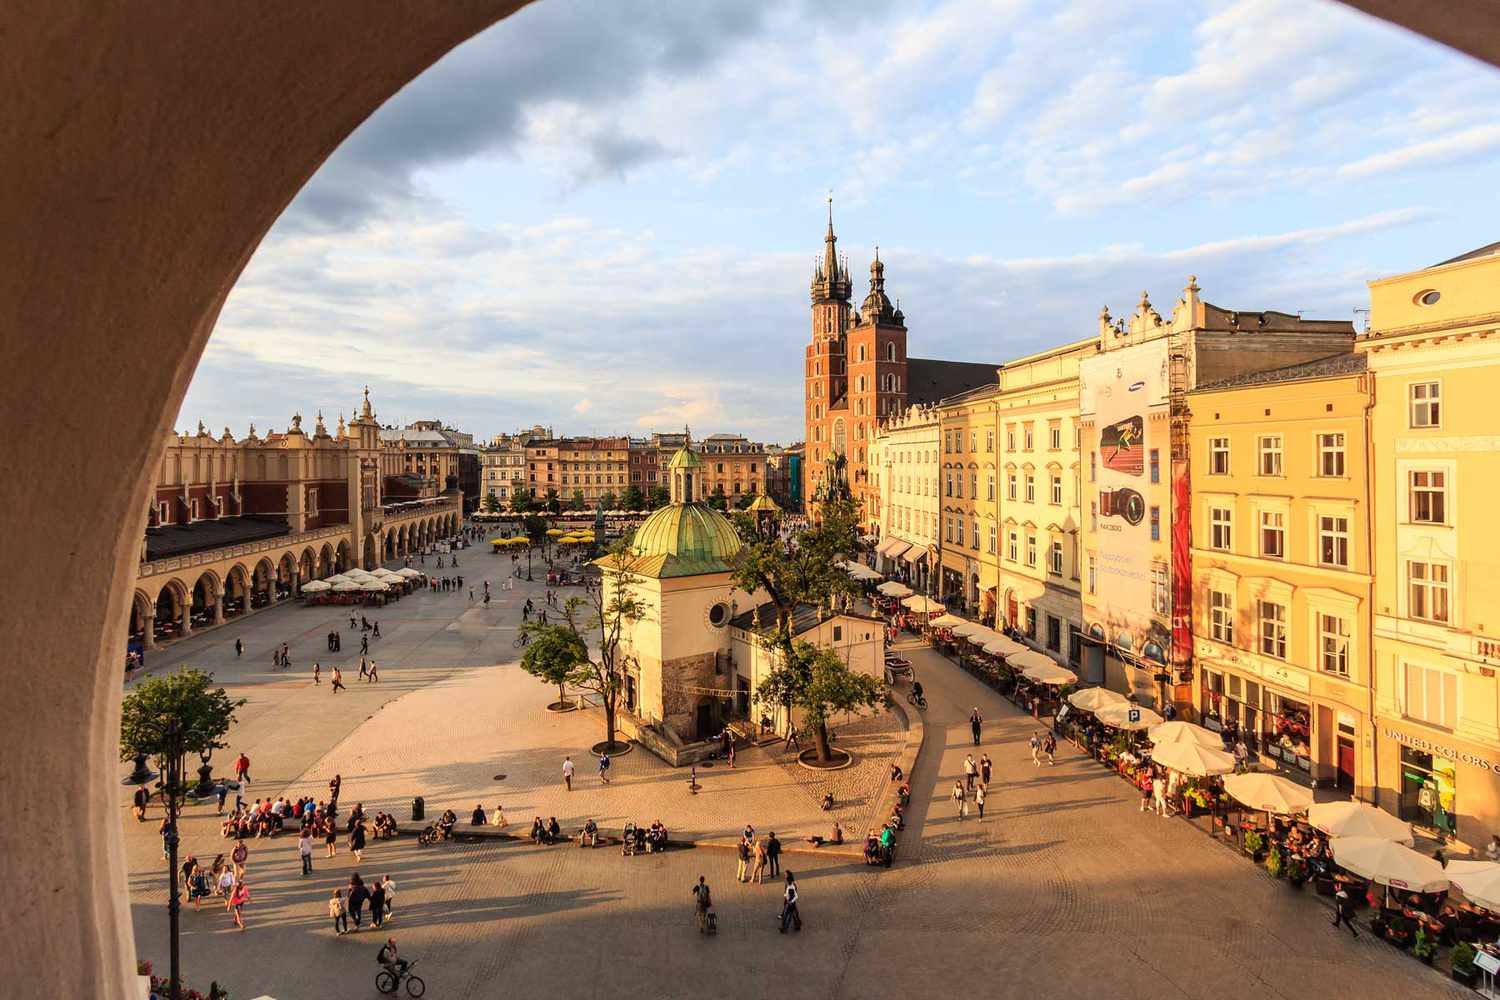 Vue à travers une arche d'une place publique à Cracovie, Pologne, élue l'une des meilleures villes du monde